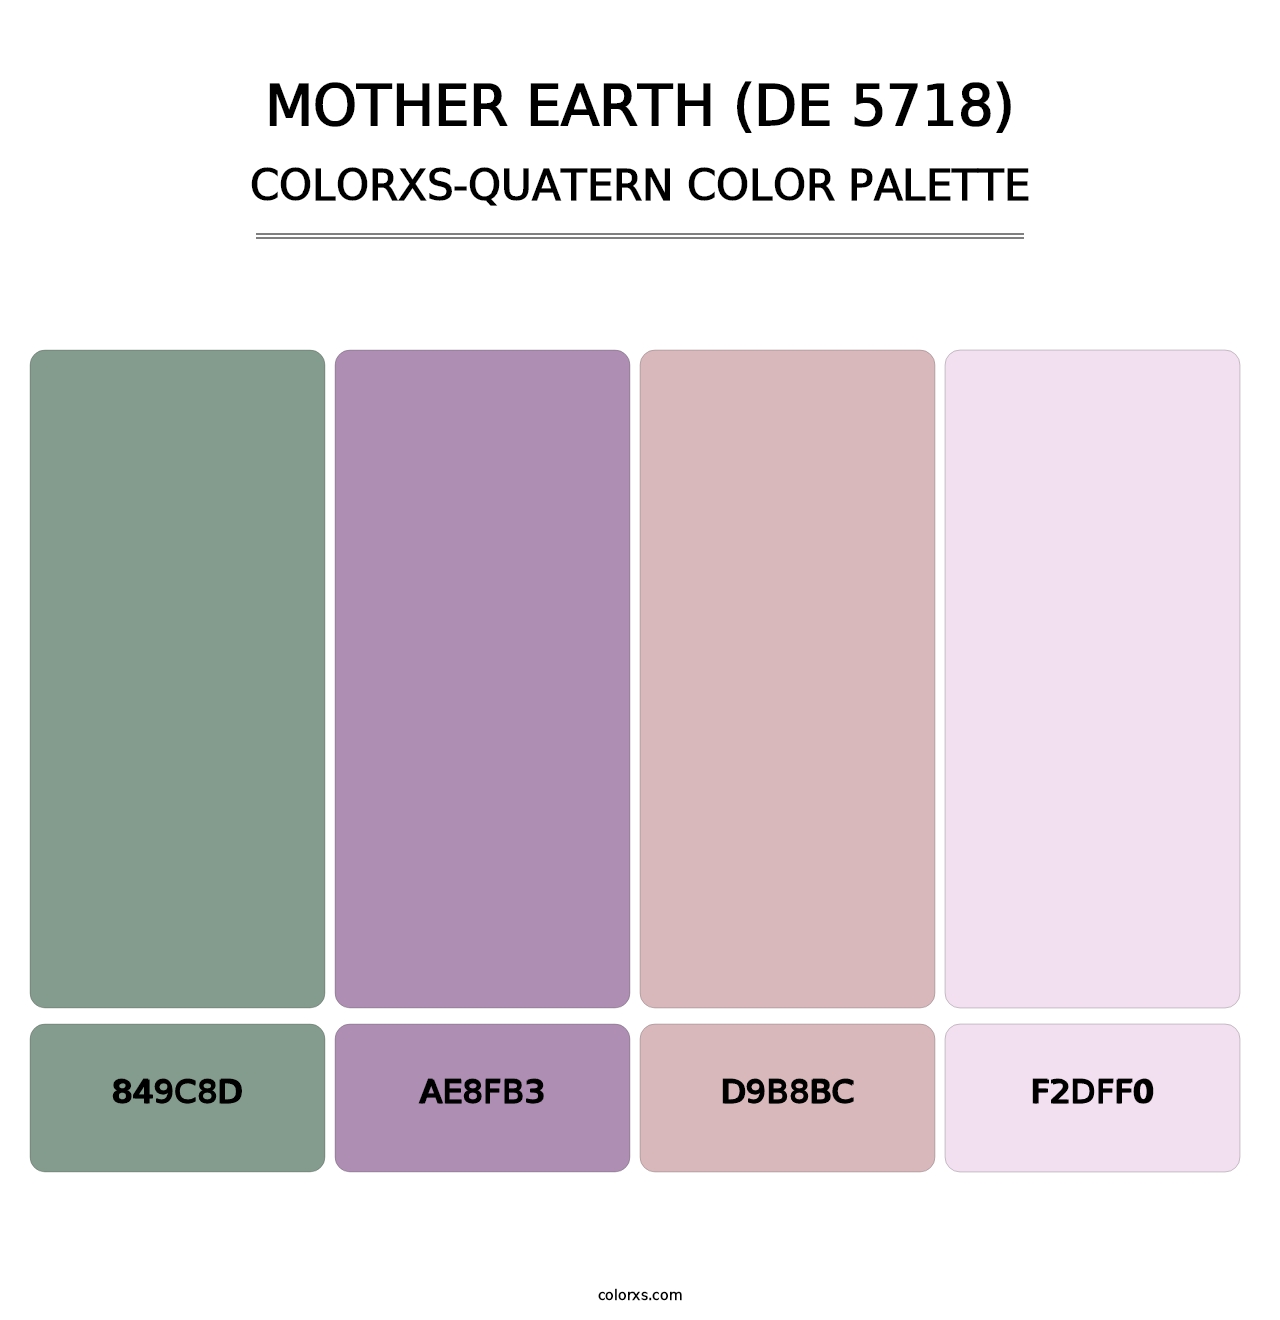 Mother Earth (DE 5718) - Colorxs Quatern Palette